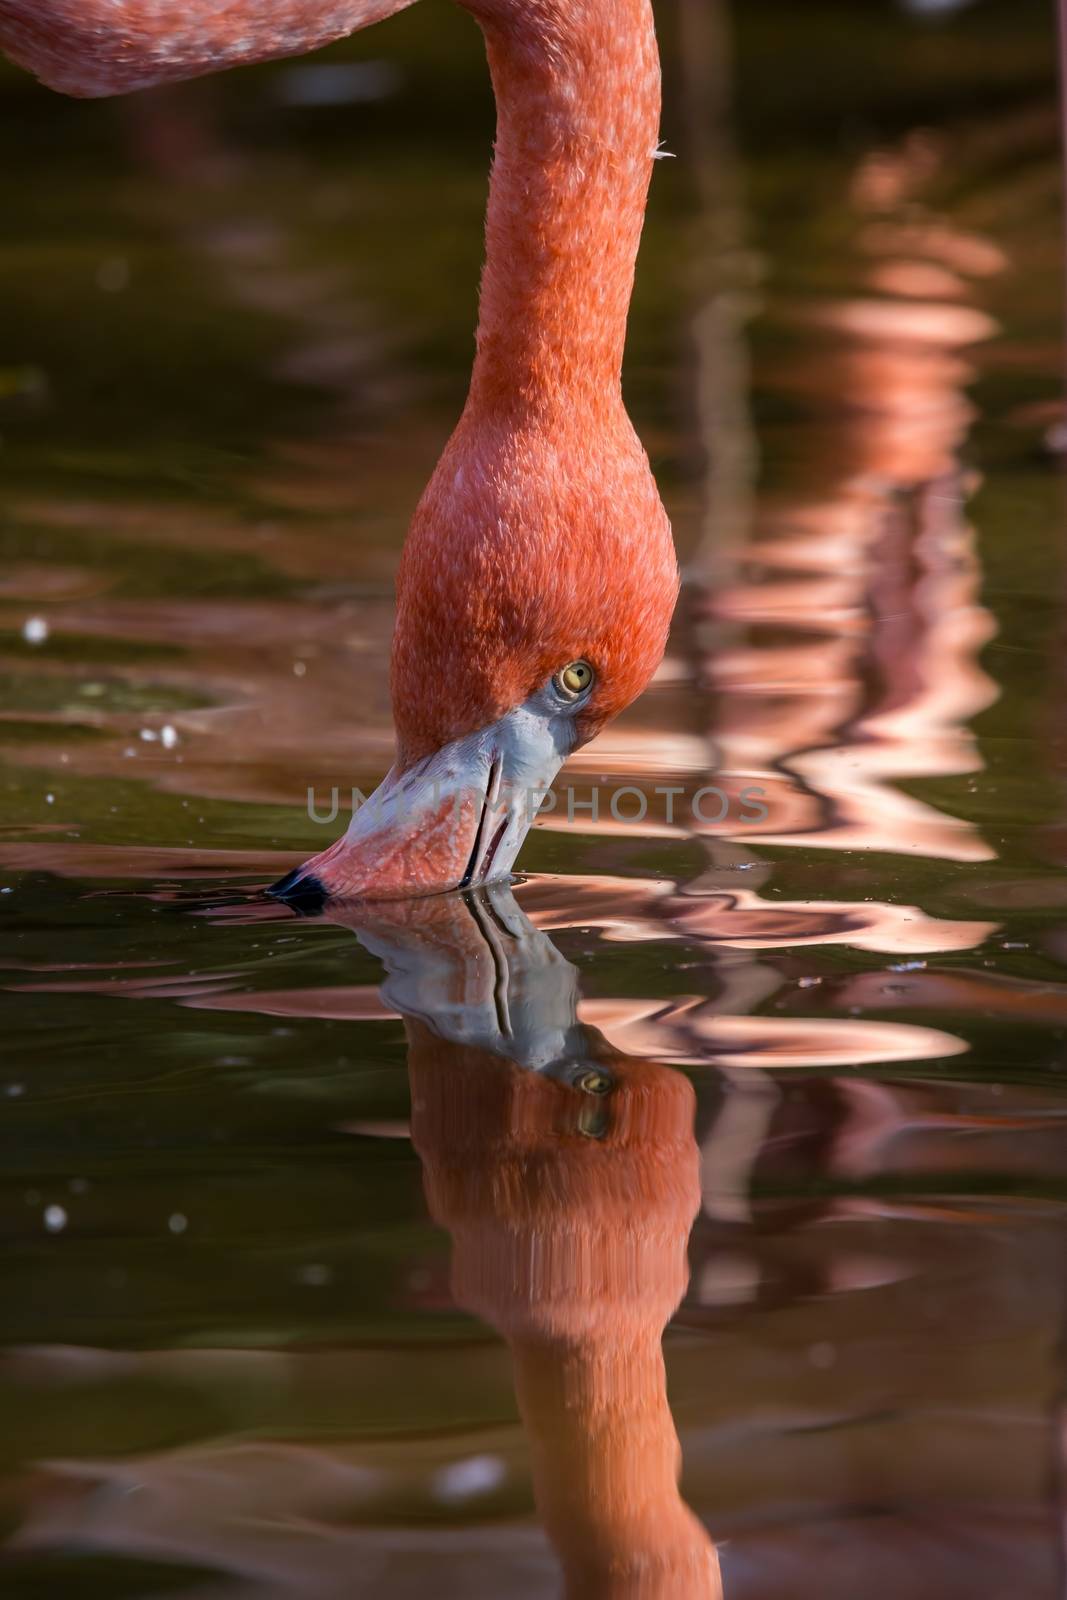 Pretty flamingo up close shot by Digoarpi